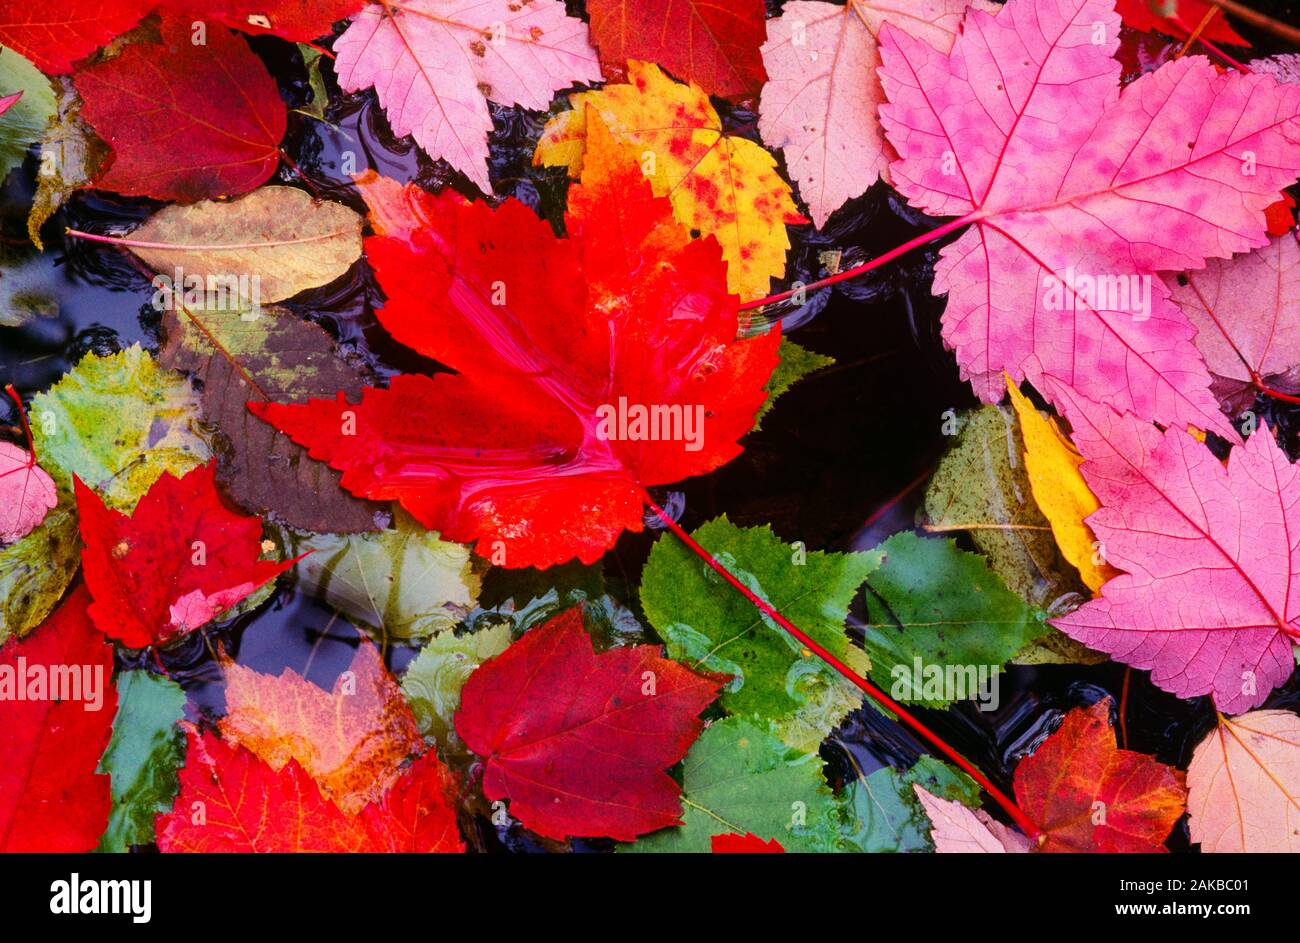 Nahaufnahme der bunten gefallen Ahorn Blätter im Herbst Farben Stockfoto